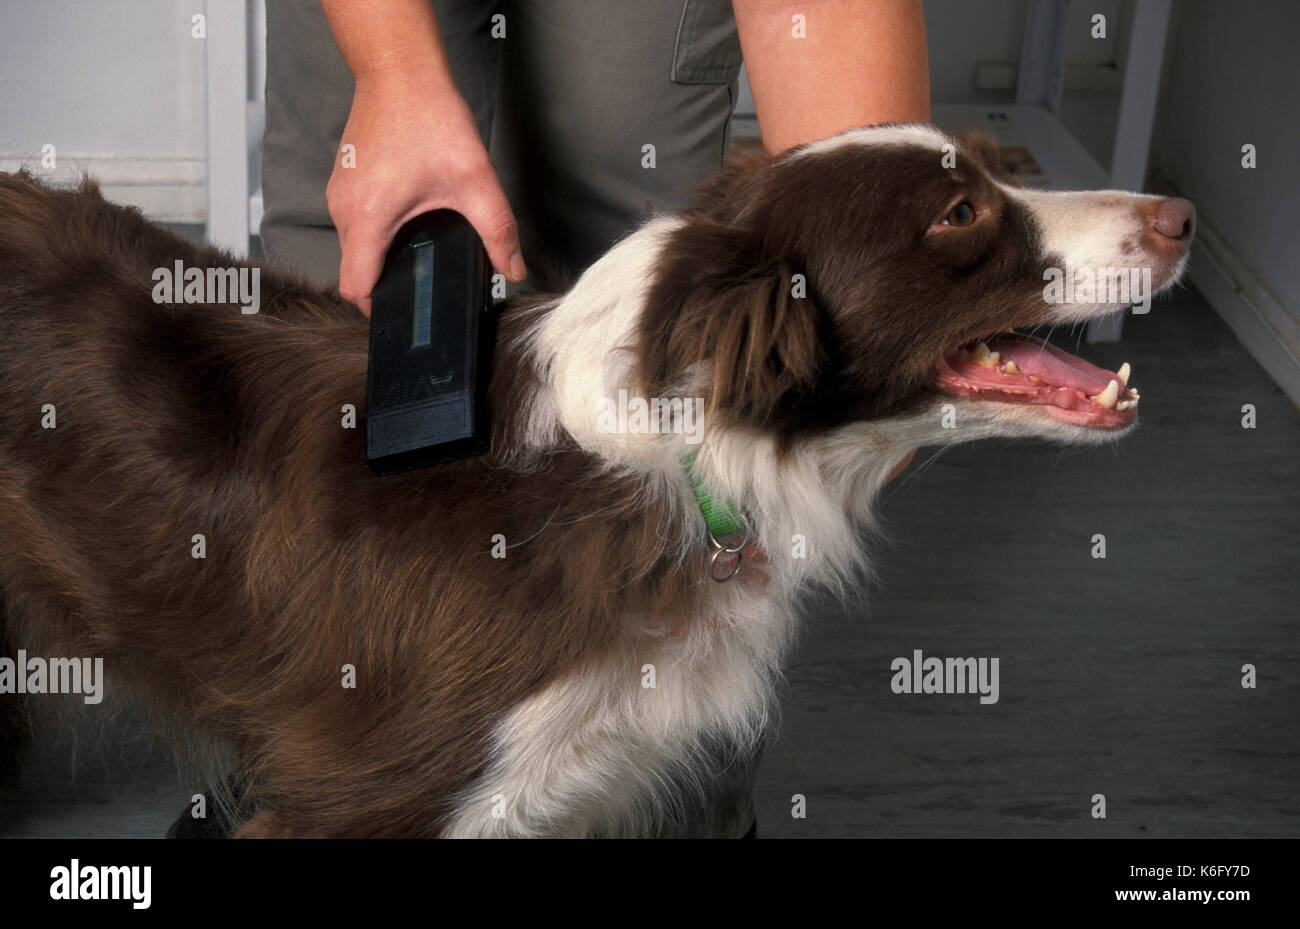 Border Collie Hund an Tierärzte Kontrolle der Mikrochip in Hals mit elektronischen Lesegerät Stockfoto